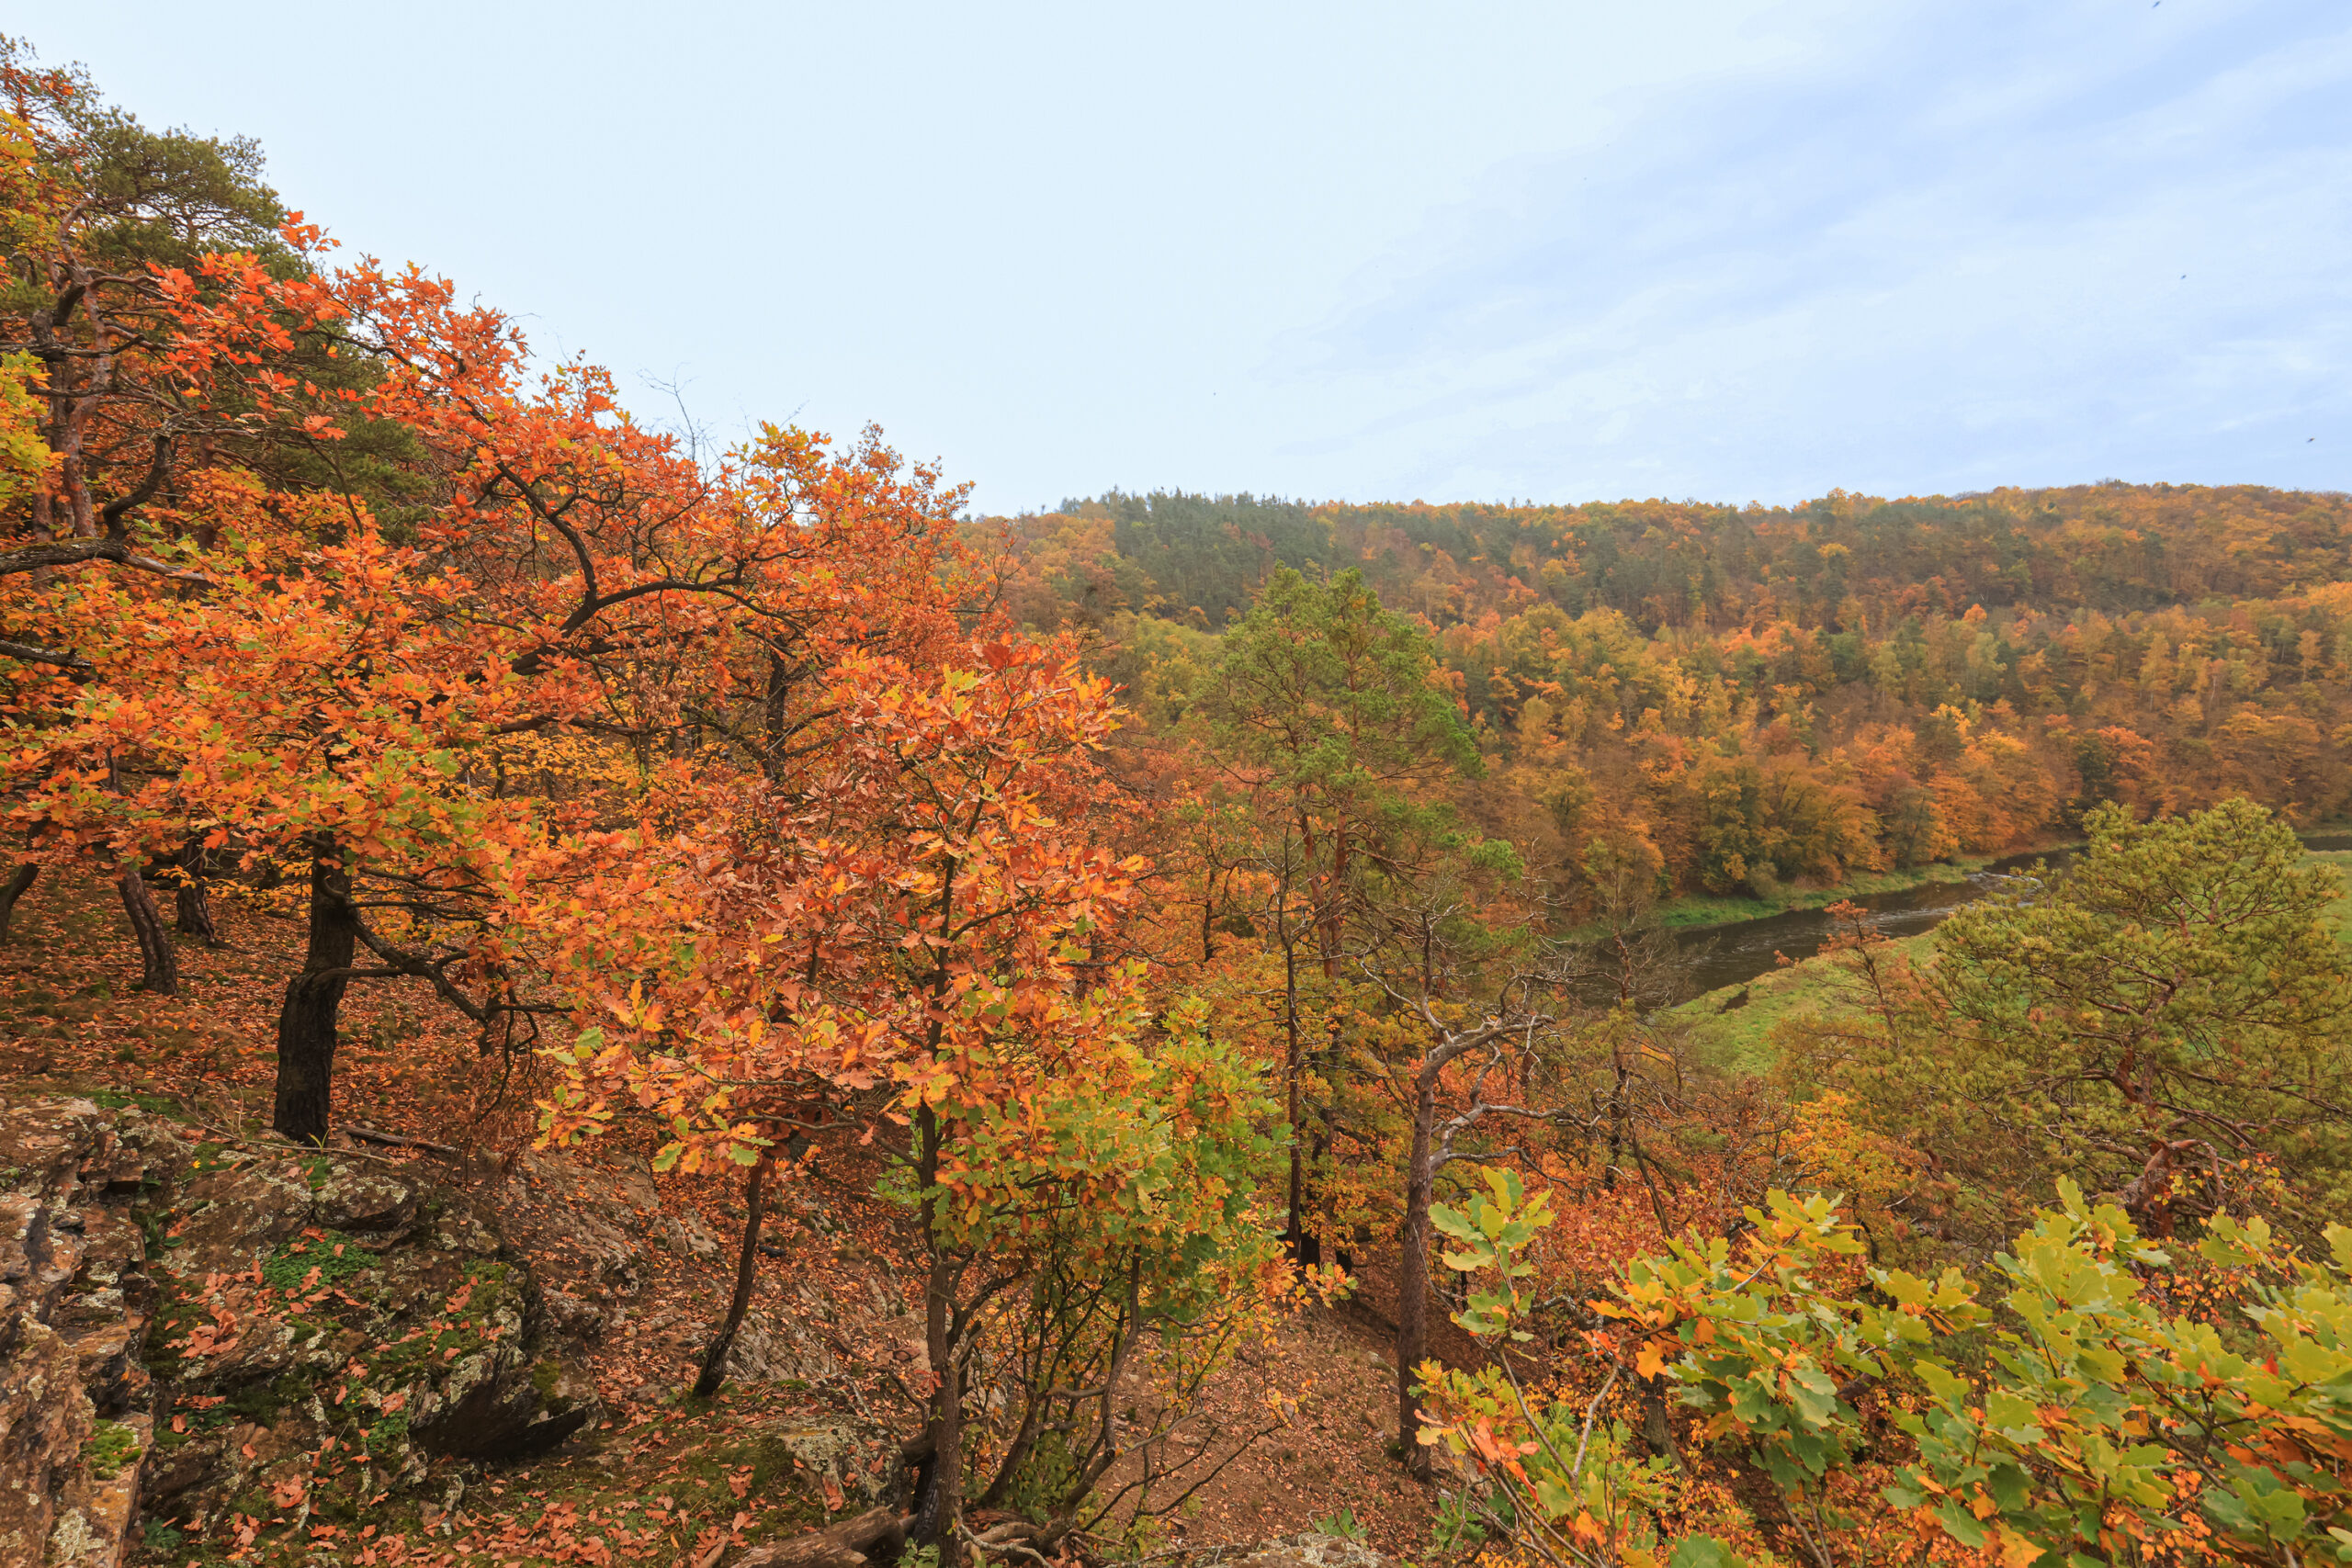 <h1>Zábělá</h1><br />
Pohled na podzimní krajinu. Po levé straně svah se zakrslými duby v podzimních barvách, který se uklání k dolnímu levému rohu. Na pozadí v pravé části pokračuje lesnatý svah podél Berounky.